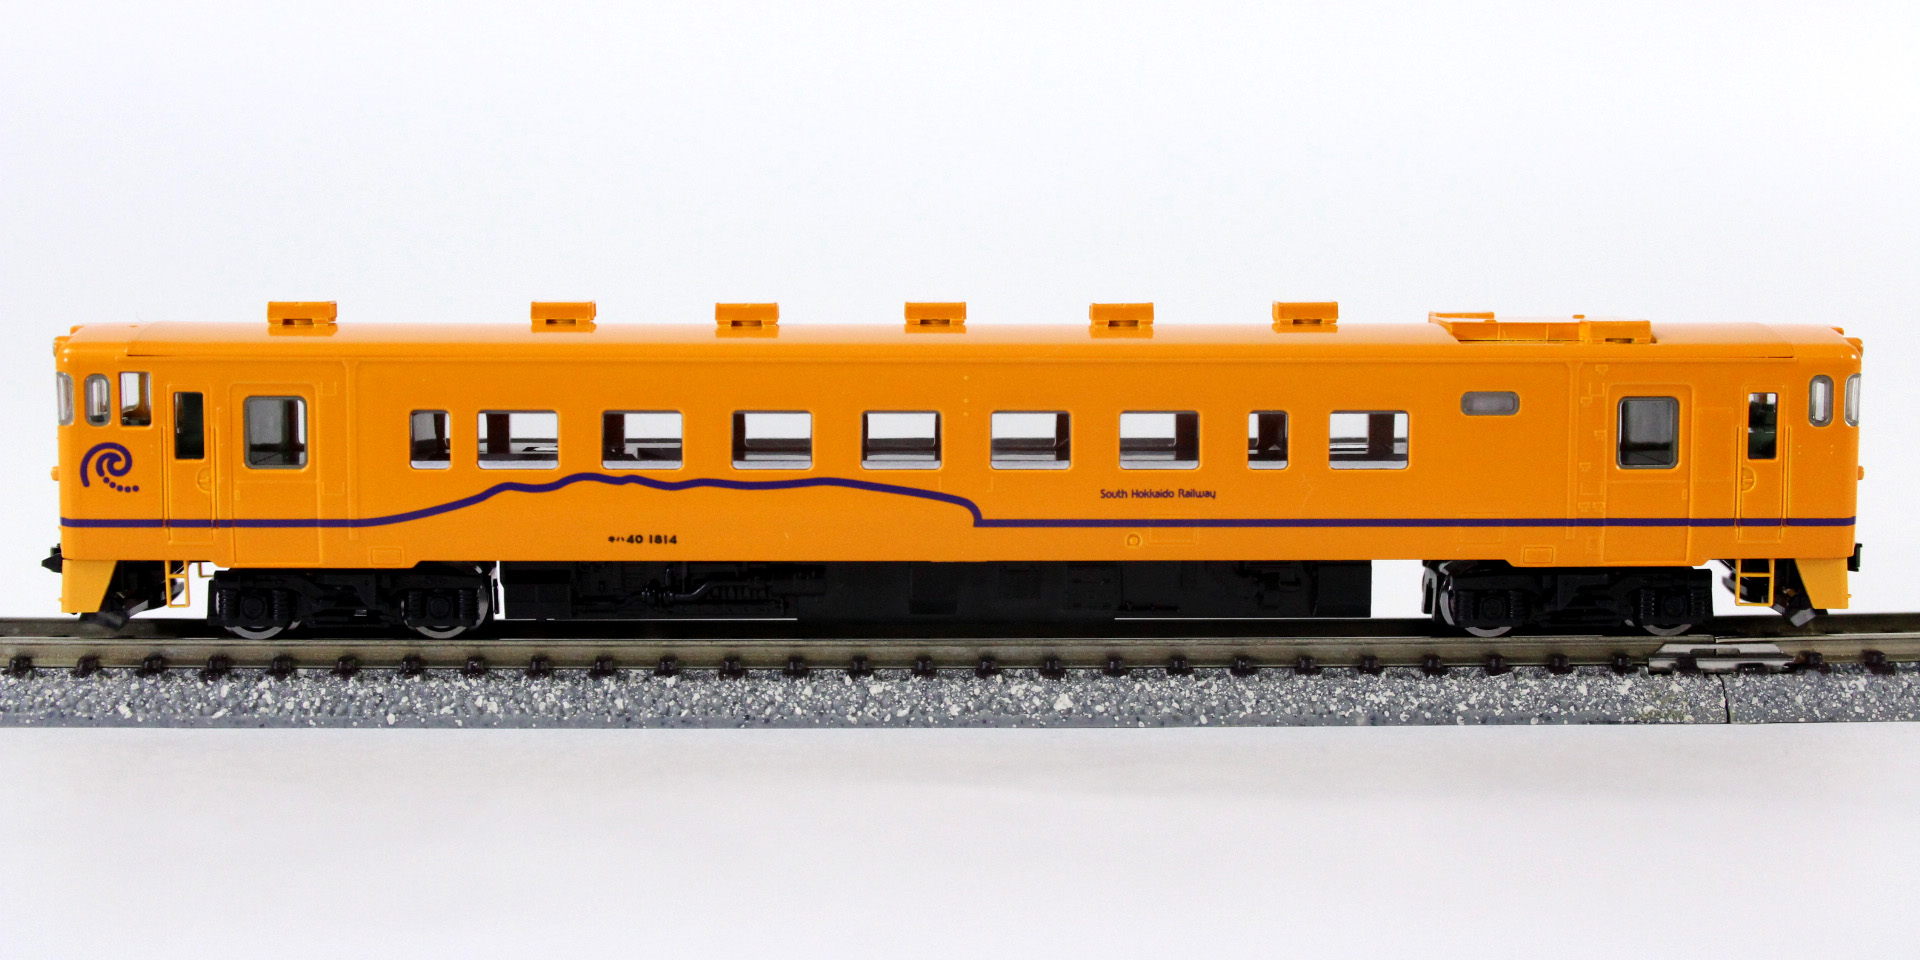 鉄道バラ》TOMIX トミックス 98038 キハ40-1810 ライト付 T 鉄道模型 N 